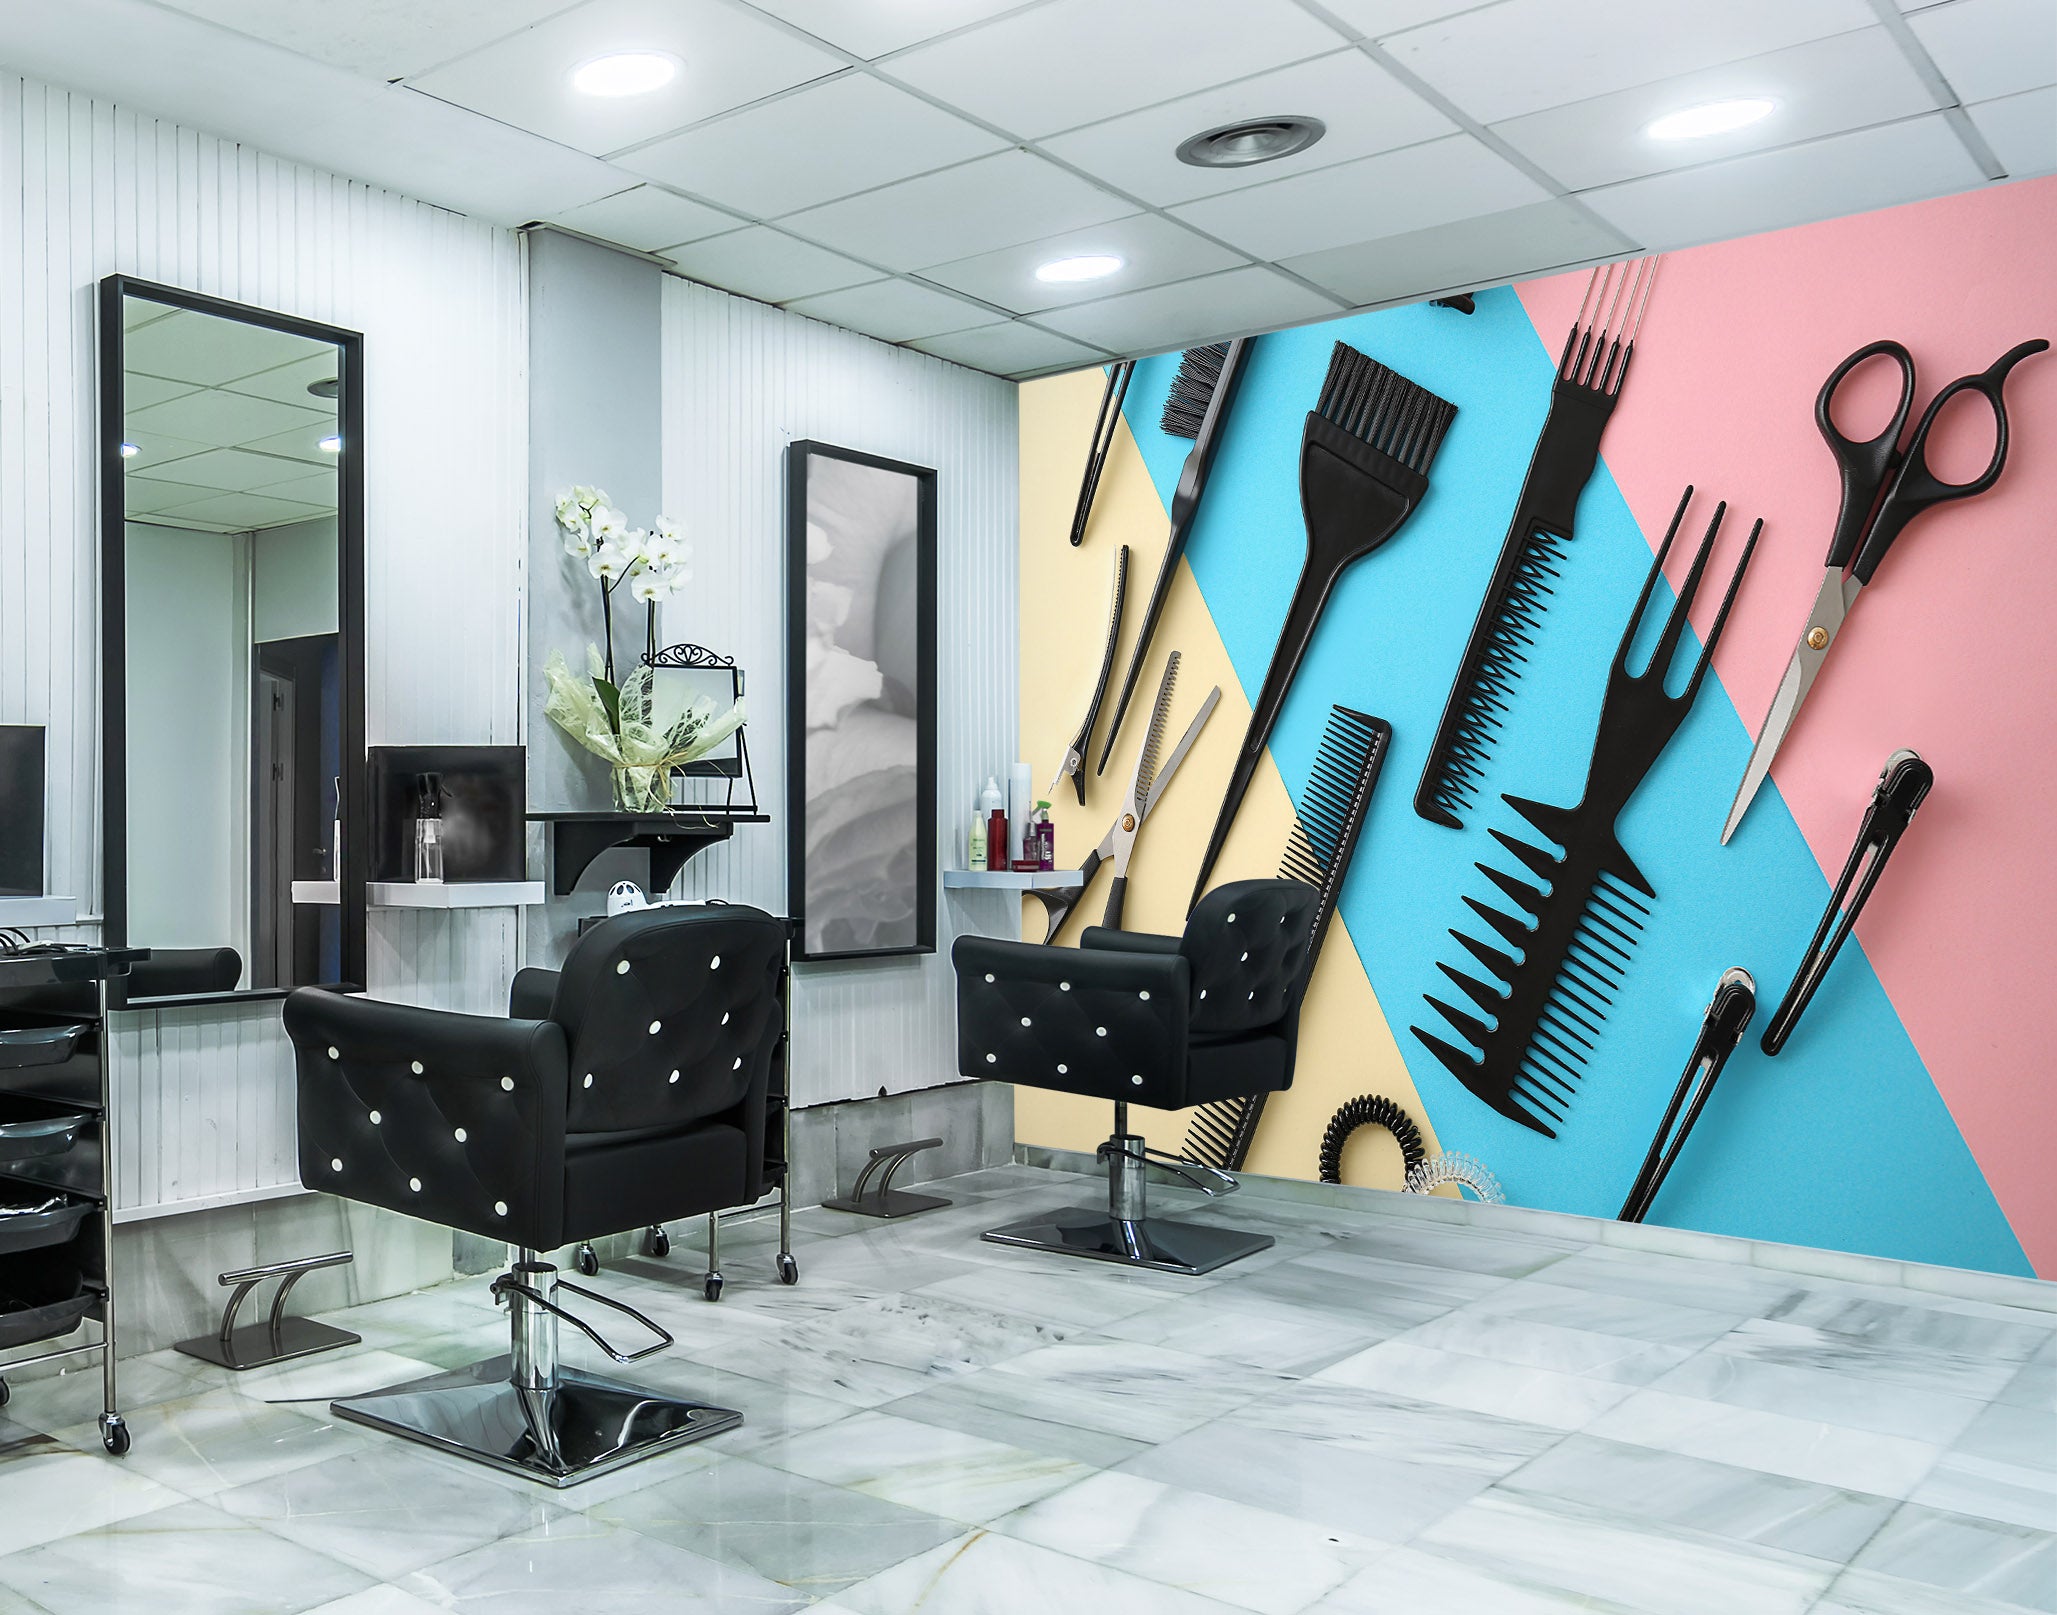 3D Haircut Comb 115163 Barber Shop Wall Murals